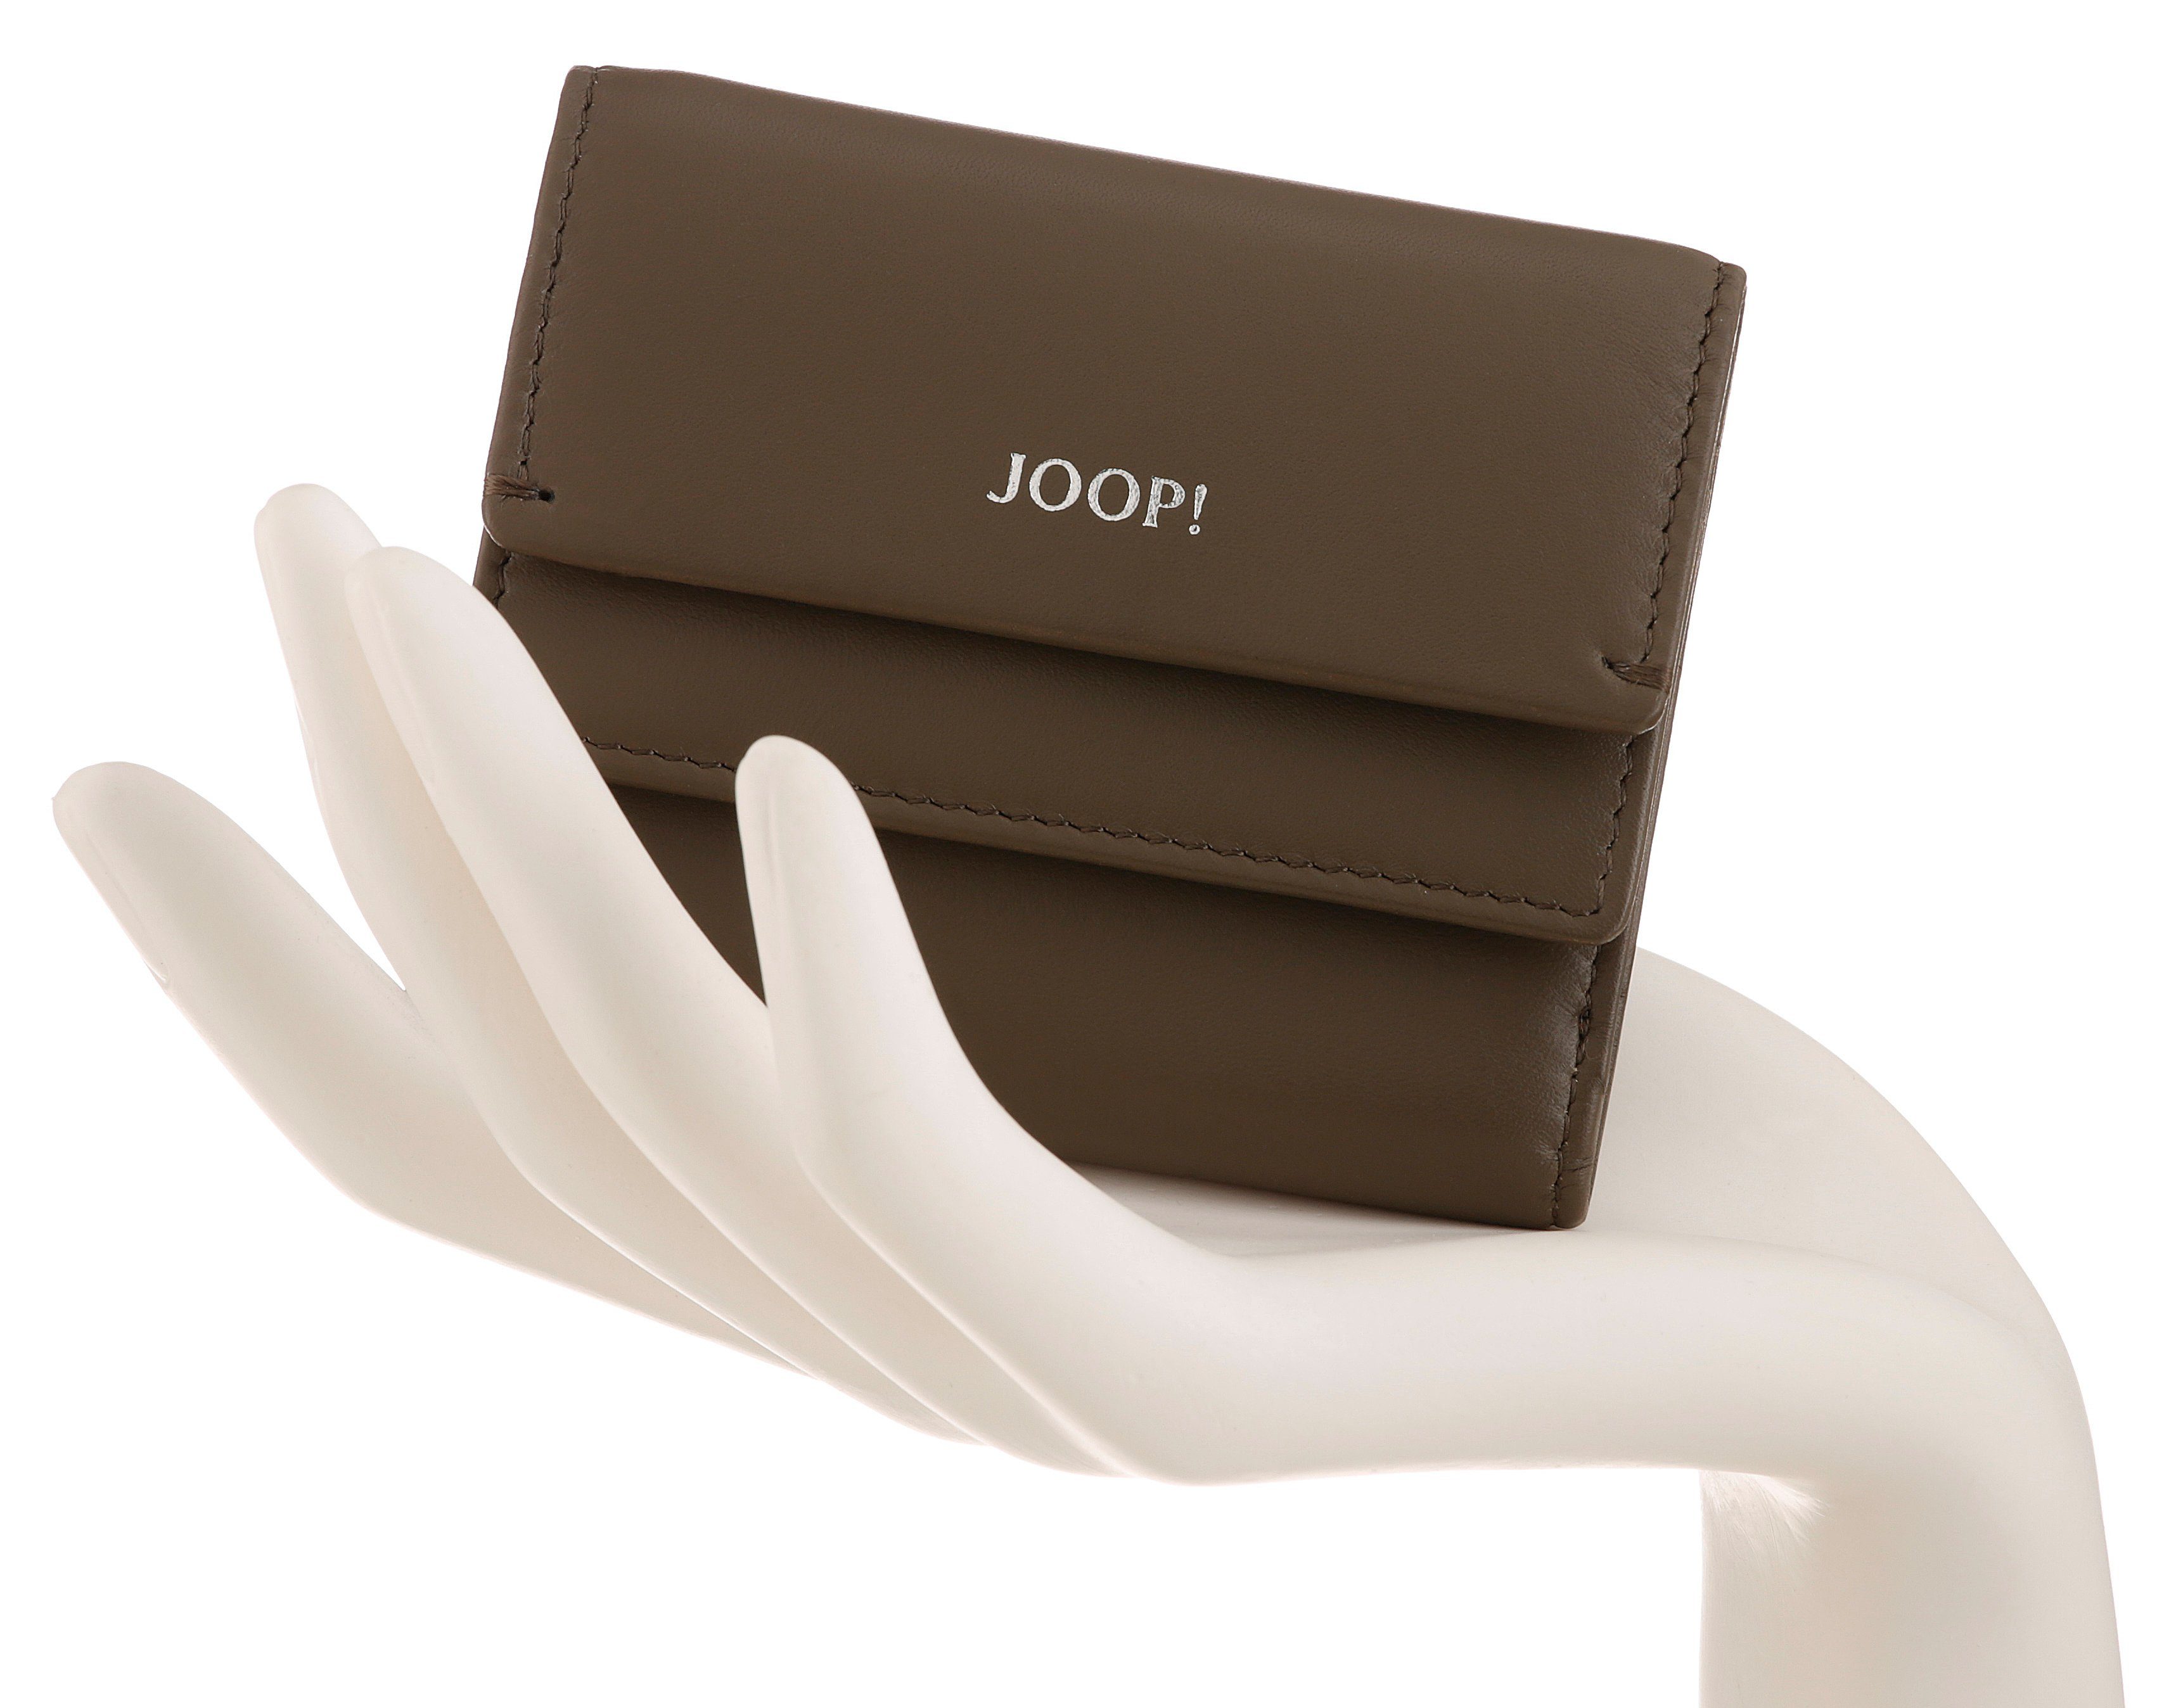 Joop! Geldbörse lina dunkelbraun purse sh5f, schlichtem Design 1.0 sofisticato in